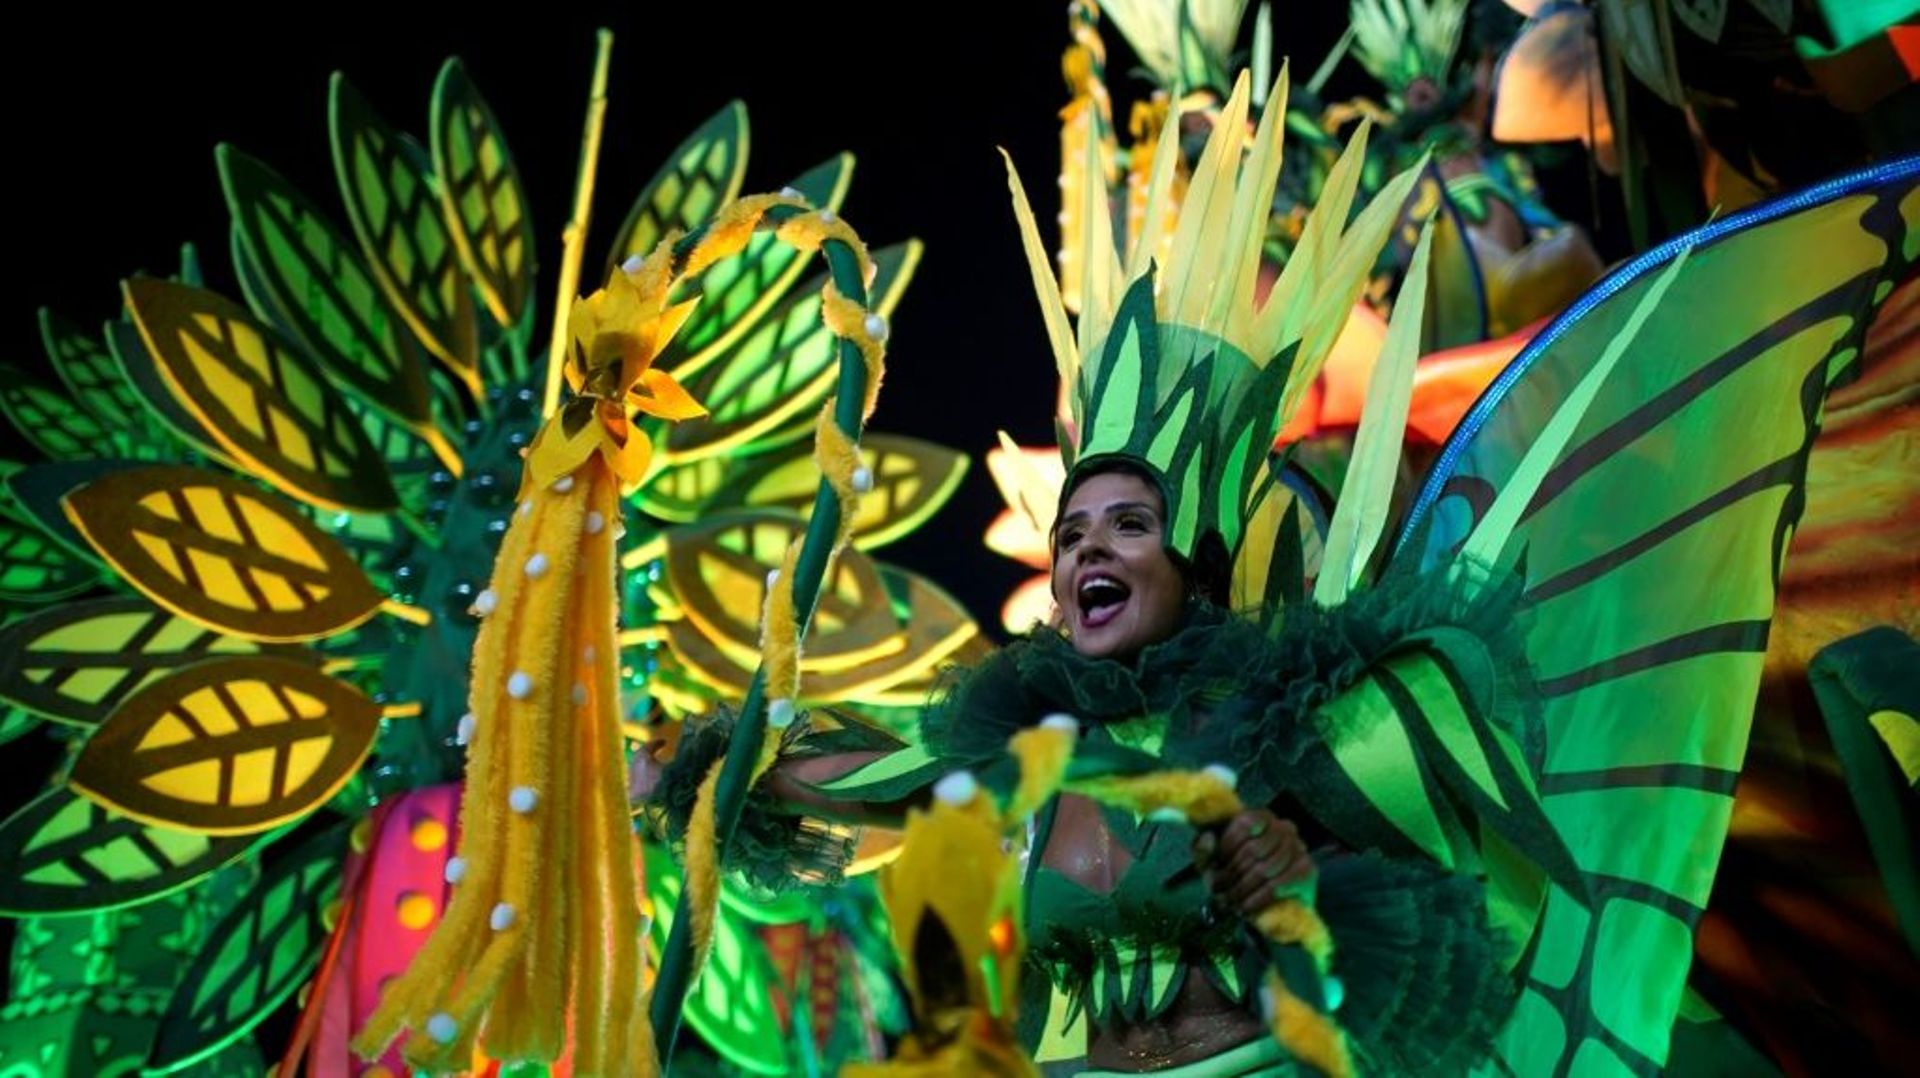 Coronavirus au Brésil : le carnaval de Rio de Janeiro reporté